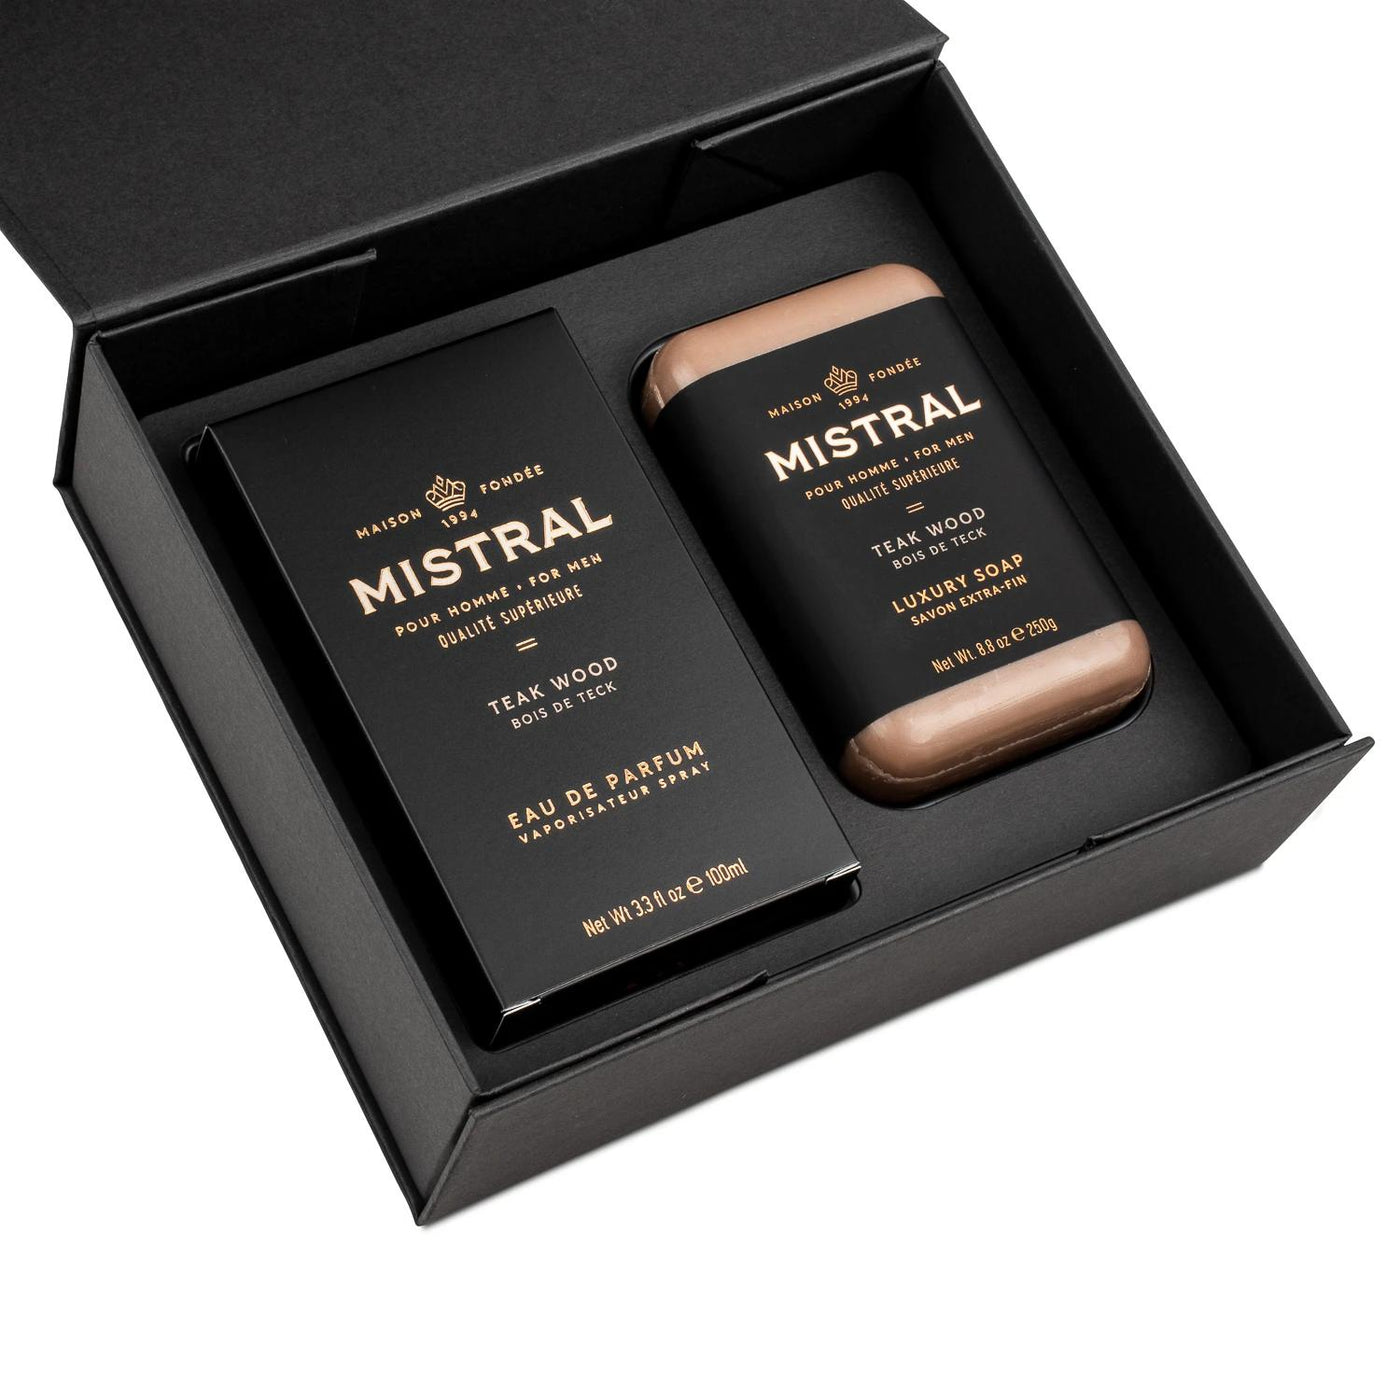 Mistral Men's Cologne & Bar Soap Gift Set-HOME/GIFTWARE-TEAK WOOD-Kevin's Fine Outdoor Gear & Apparel